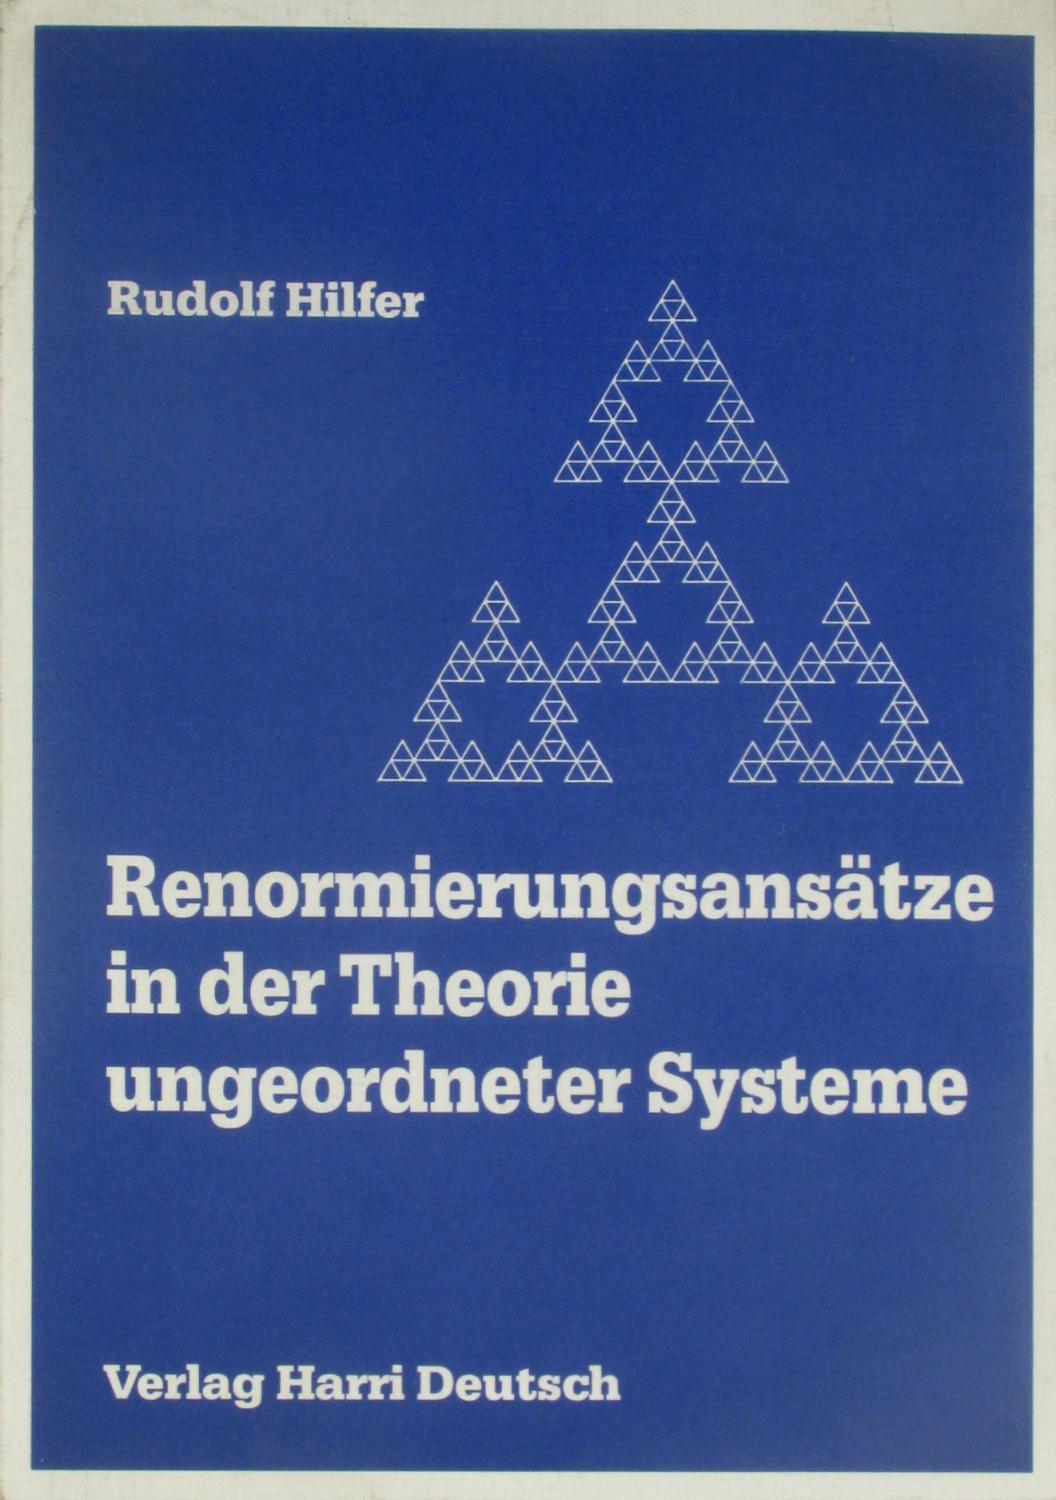 Renormierungsansätze in der Theorie untergeordneter Systeme. Fraktale Modelle und ihre Anwendung., - Hilfer, Rudolf